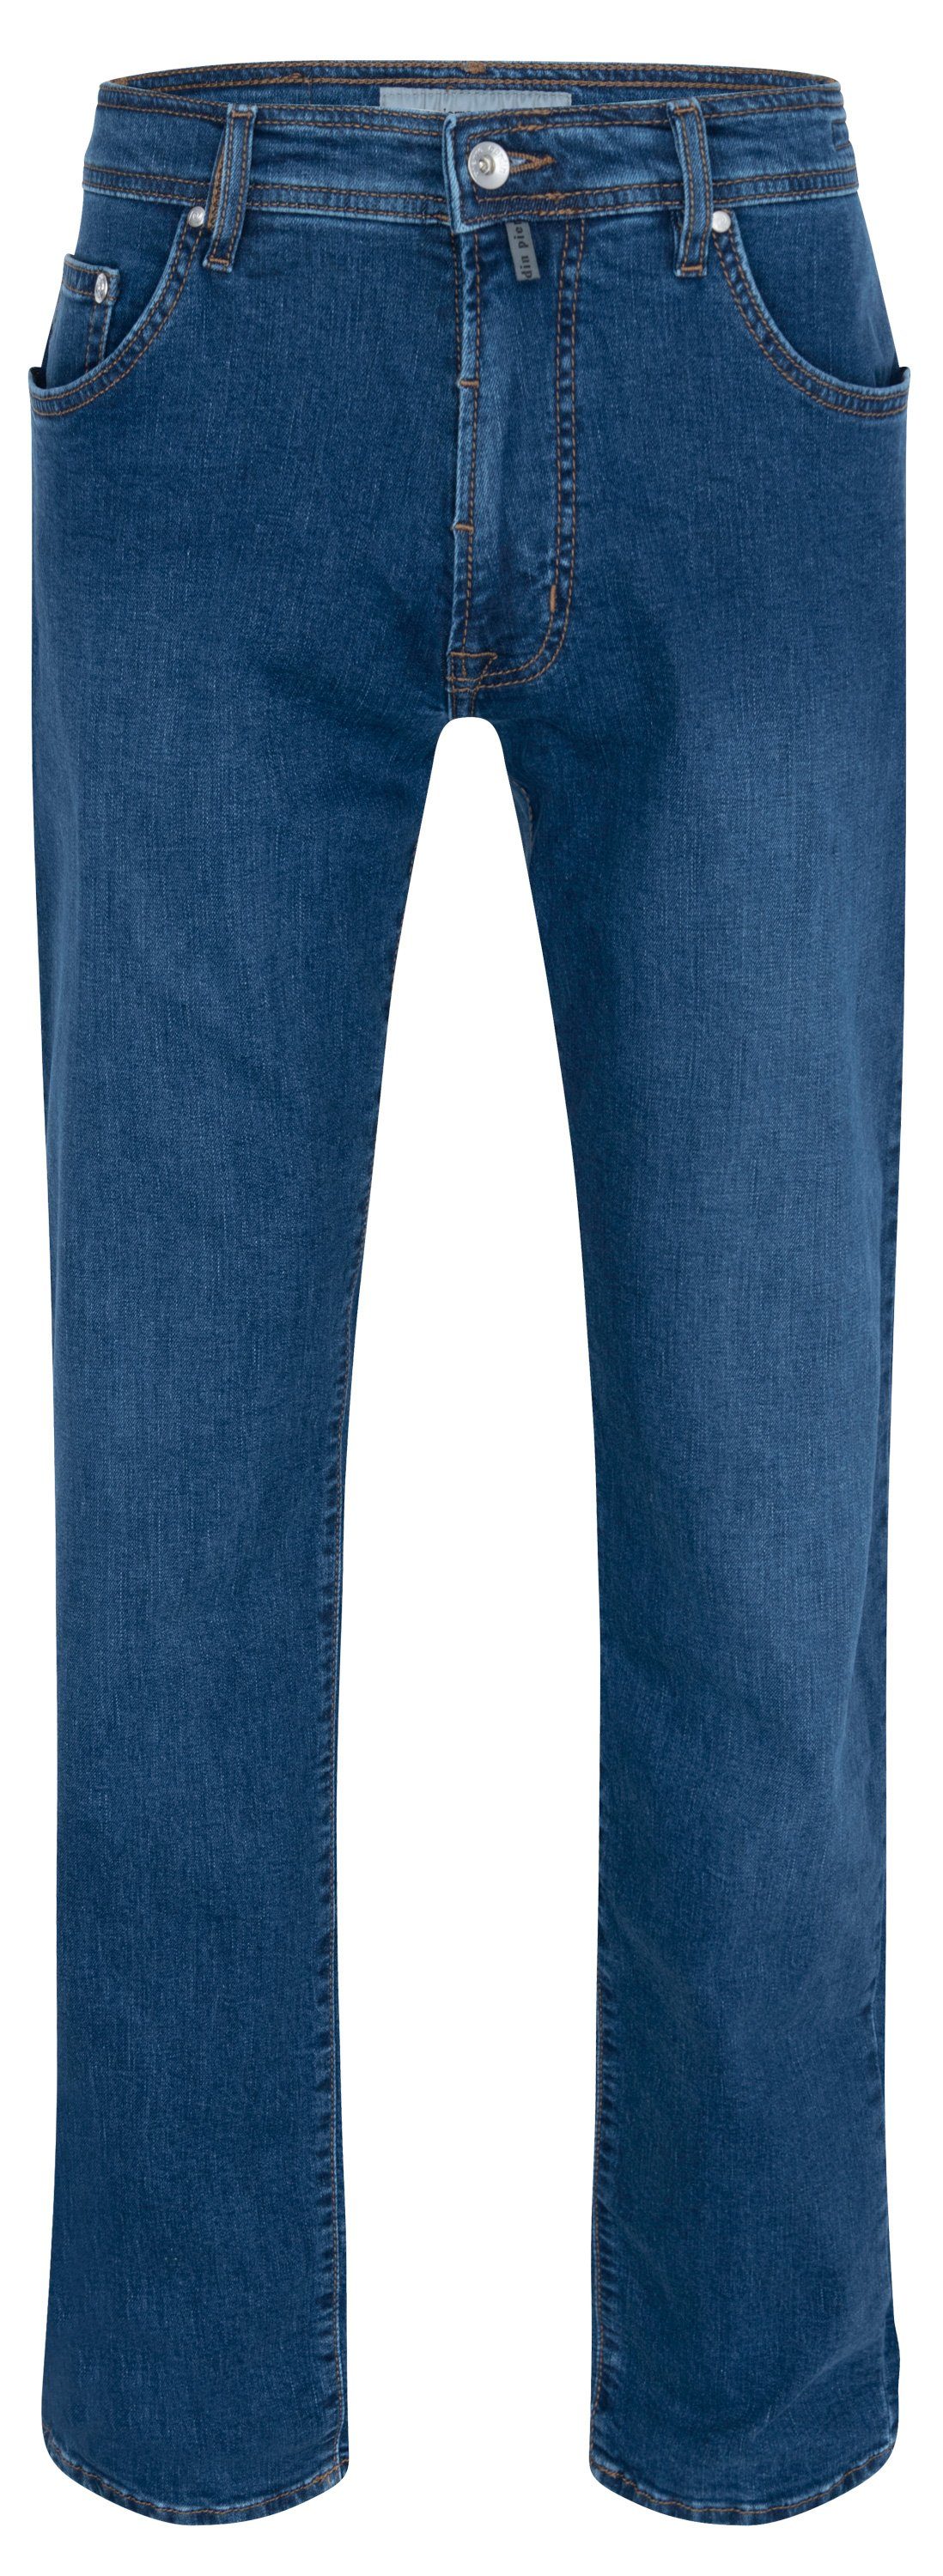 Pierre Cardin 5-Pocket-Jeans PIERRE CARDIN DEAUVILLE blue used 31960 8075.6822